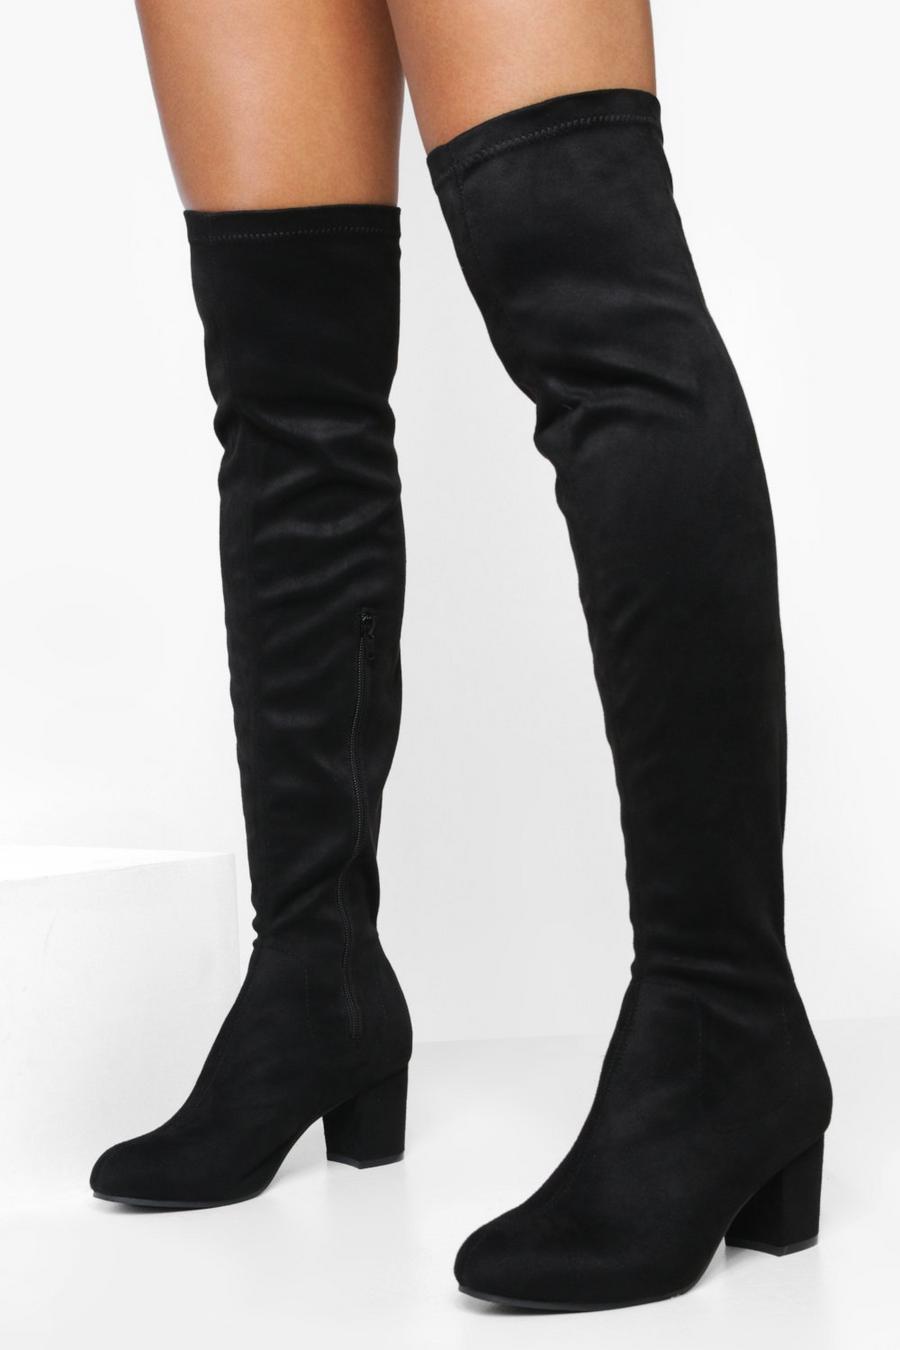 Stivali elasticizzati alti al ginocchio con tacco largo, Nero black